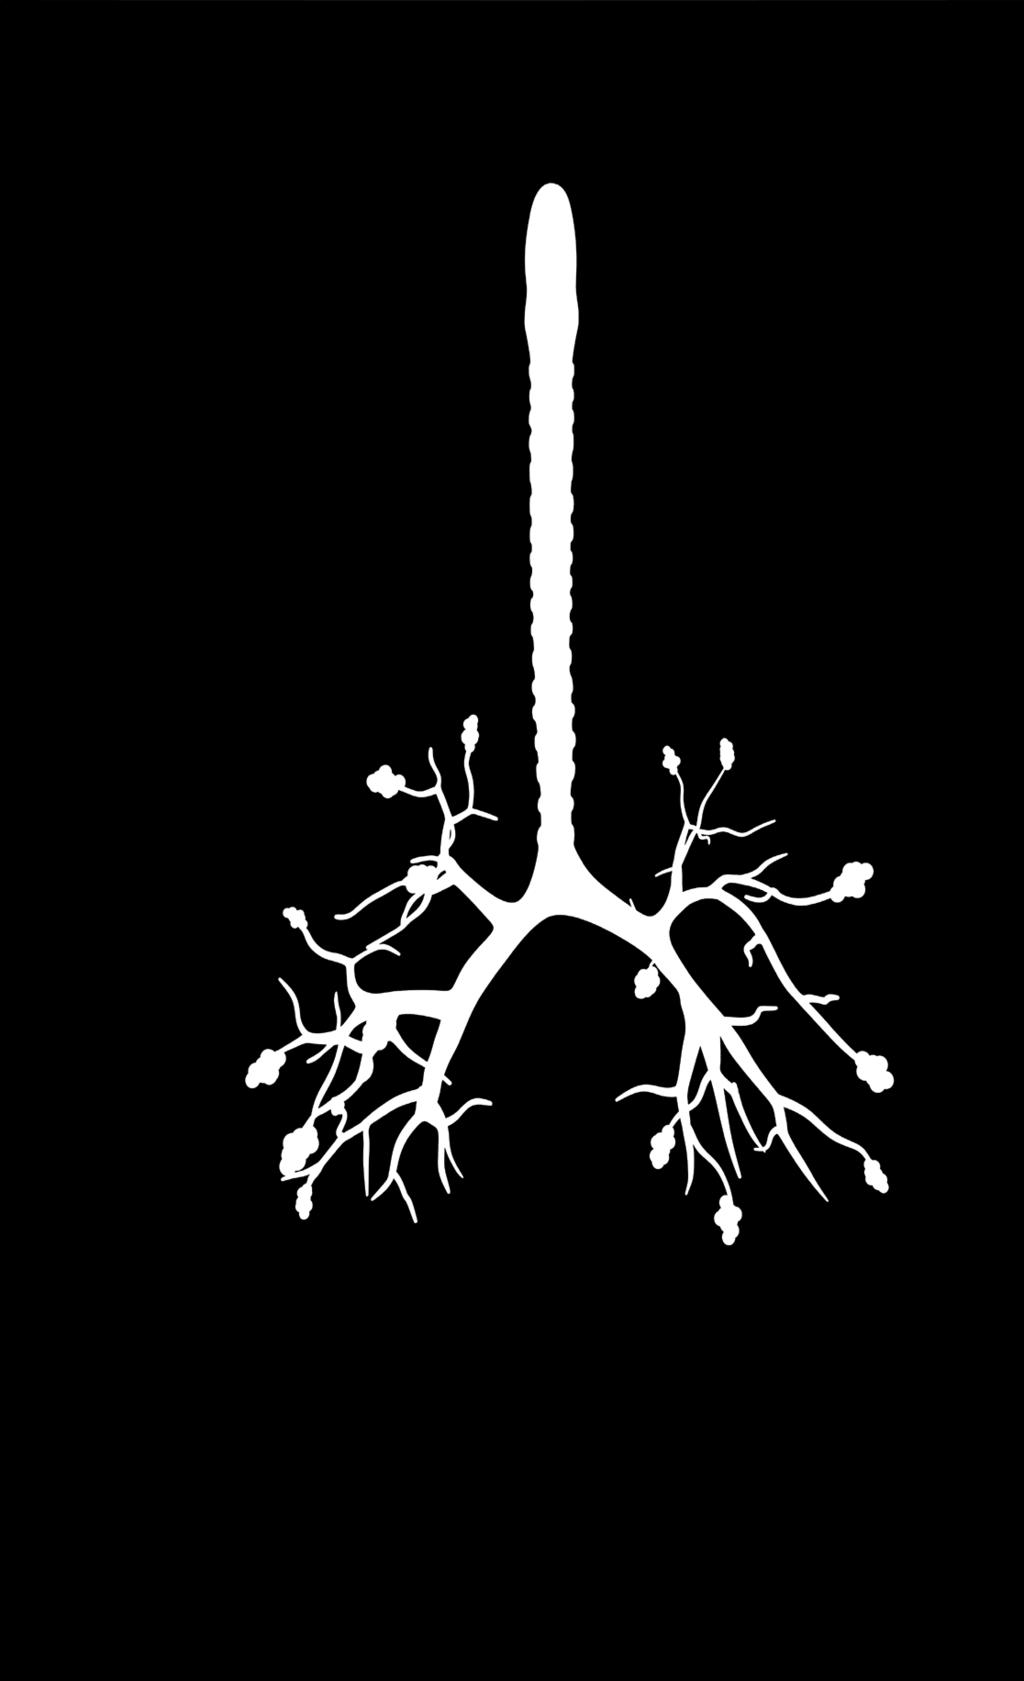 celleveggen på alveolene de små lungeblærene hvor syre og